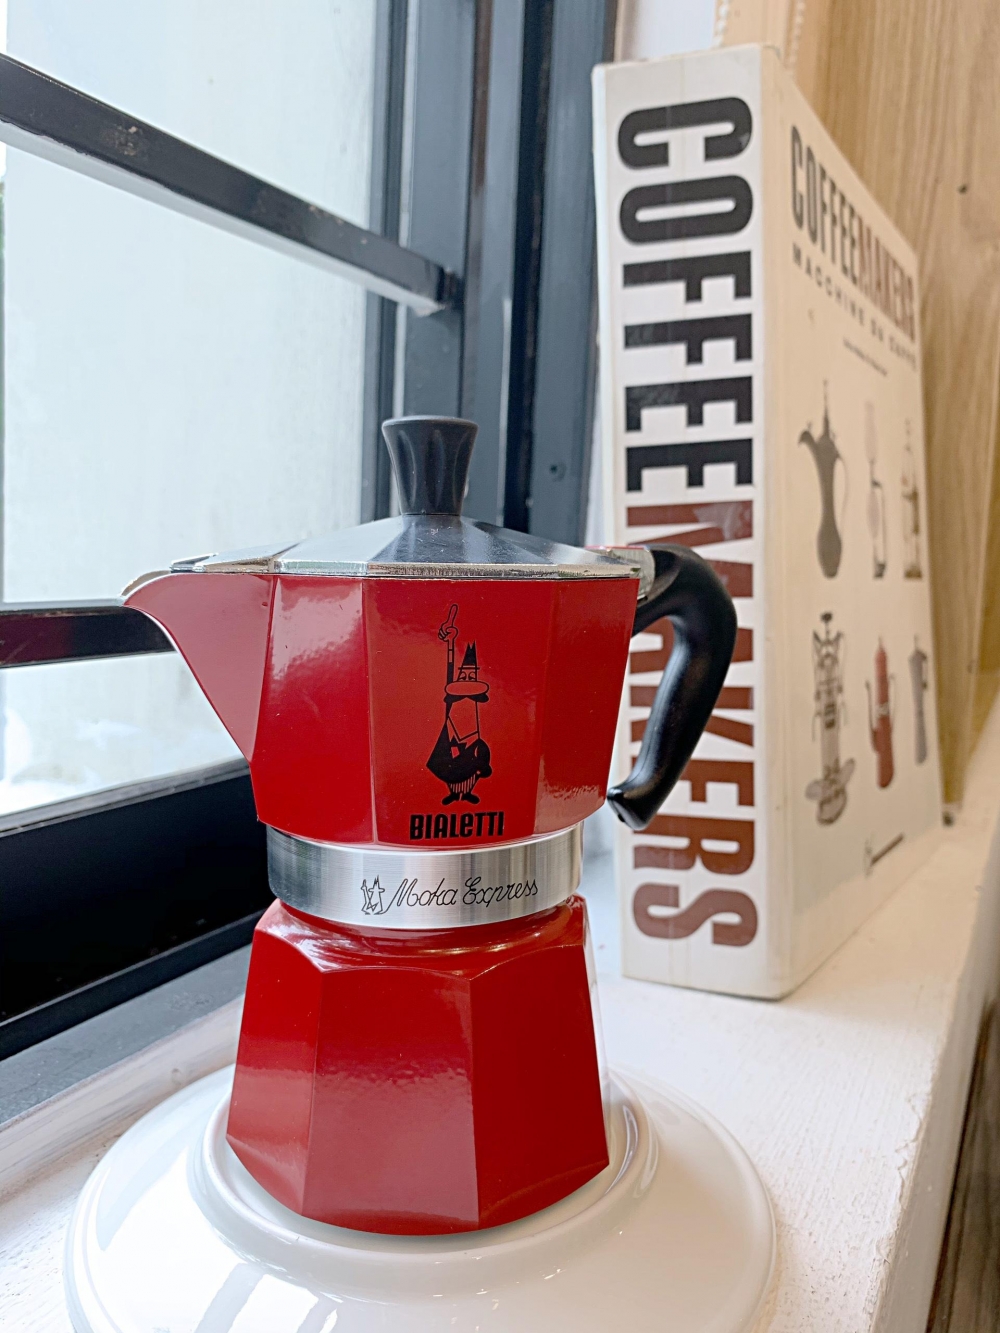 Máy pha cà phê Moka Express bất ngờ tăng manh trong năm 2020 lên đến 4 triệu sản phẩm nhờ vào các lệnh giãn cách xã hội được thực thi ở châu Âu